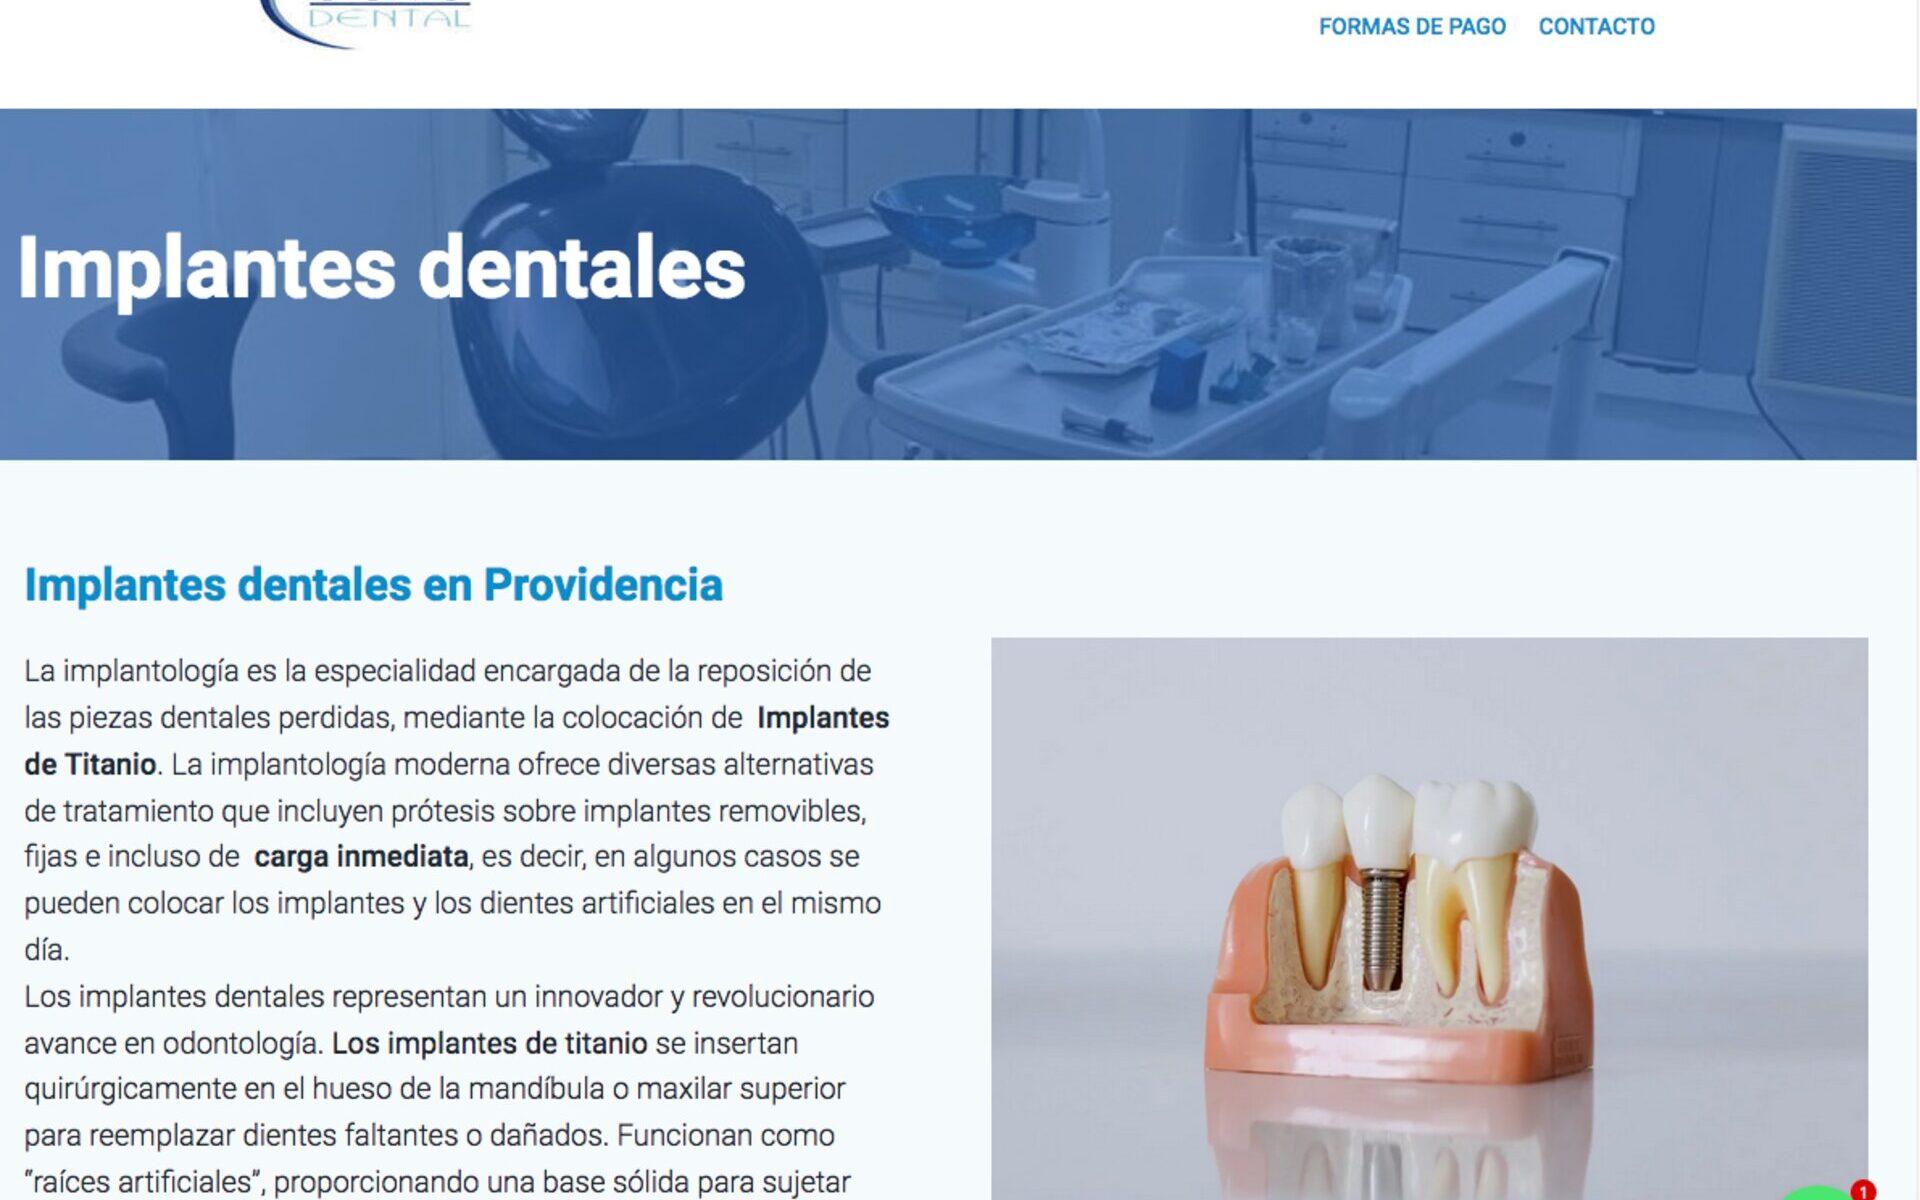 Urgencias dentales en providencia